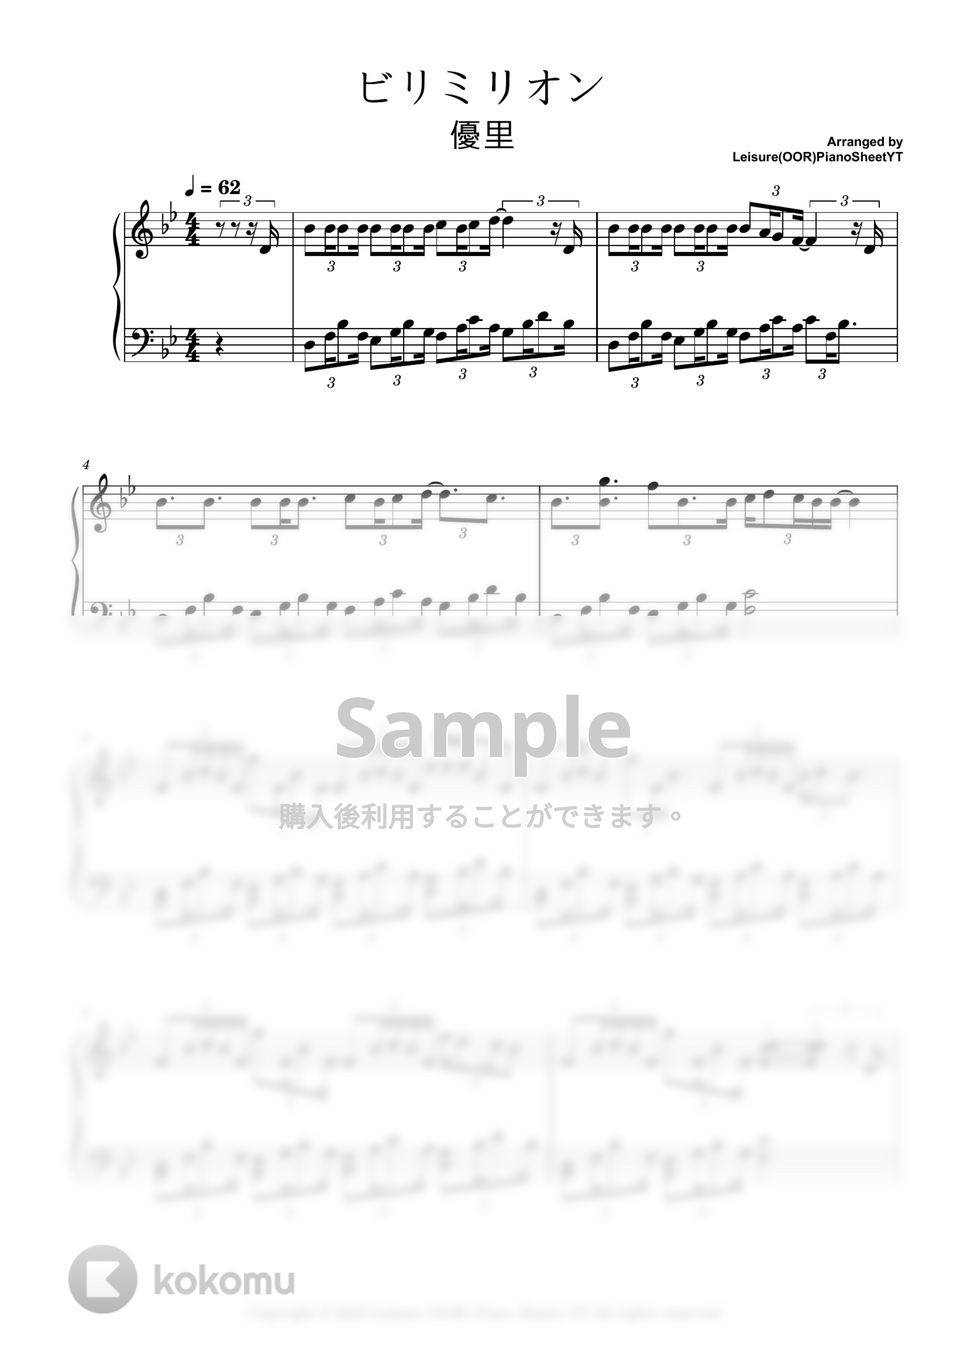 優里 yuuri - ビリミリオン by Leisure(OOR)PianoSheetYT